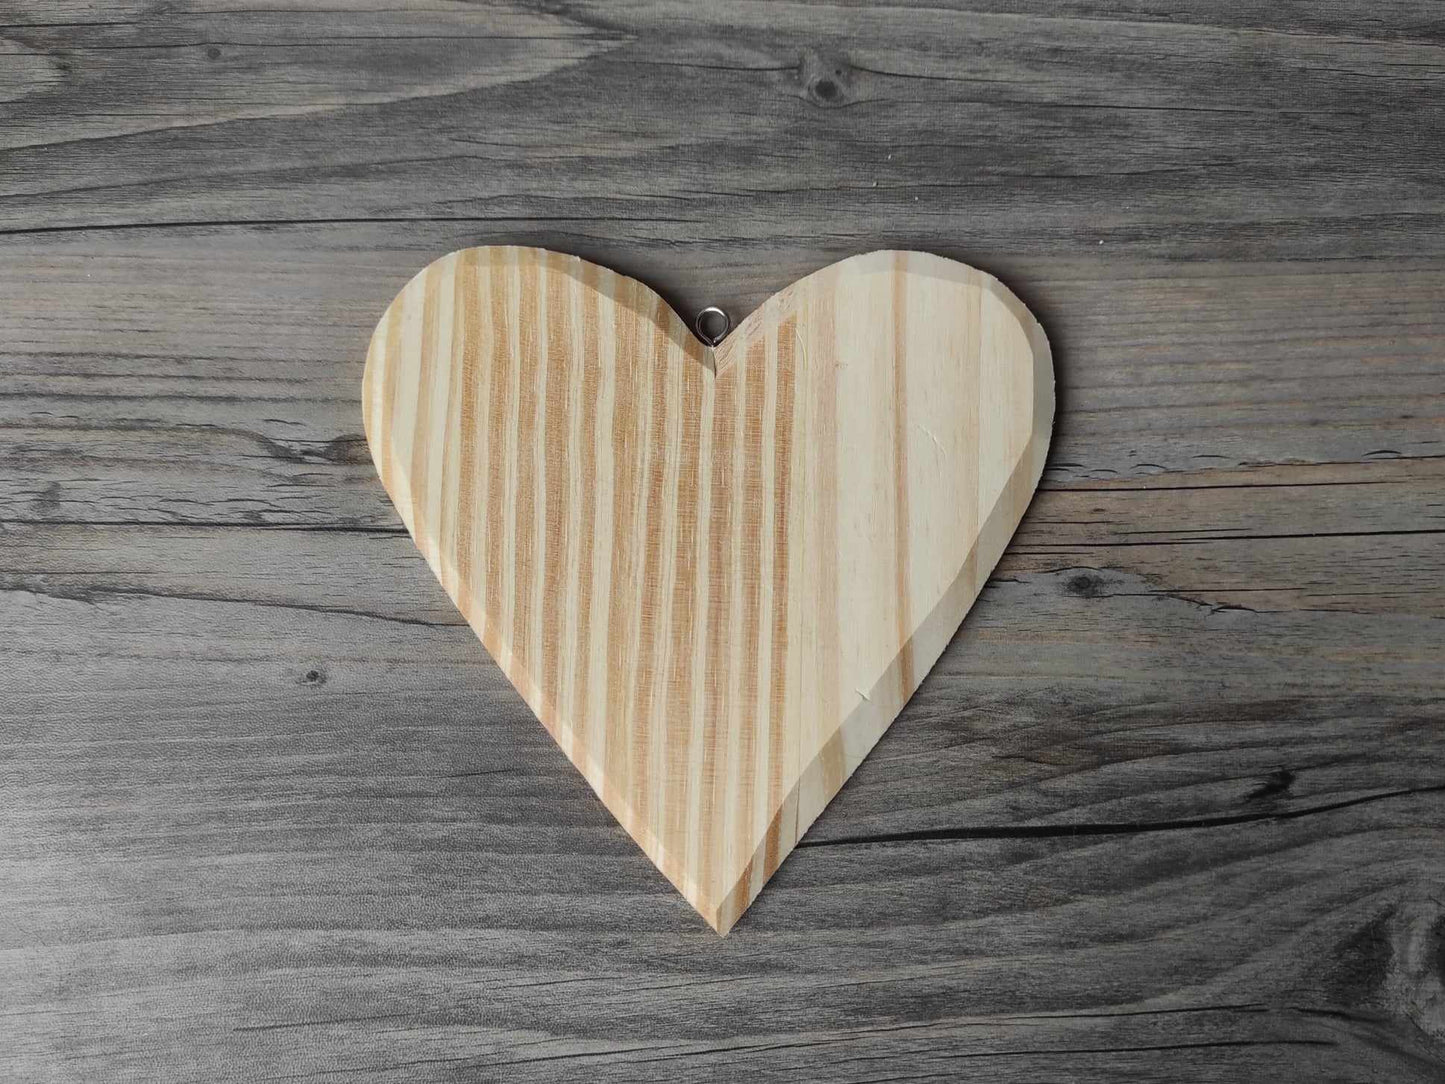 wood hearts